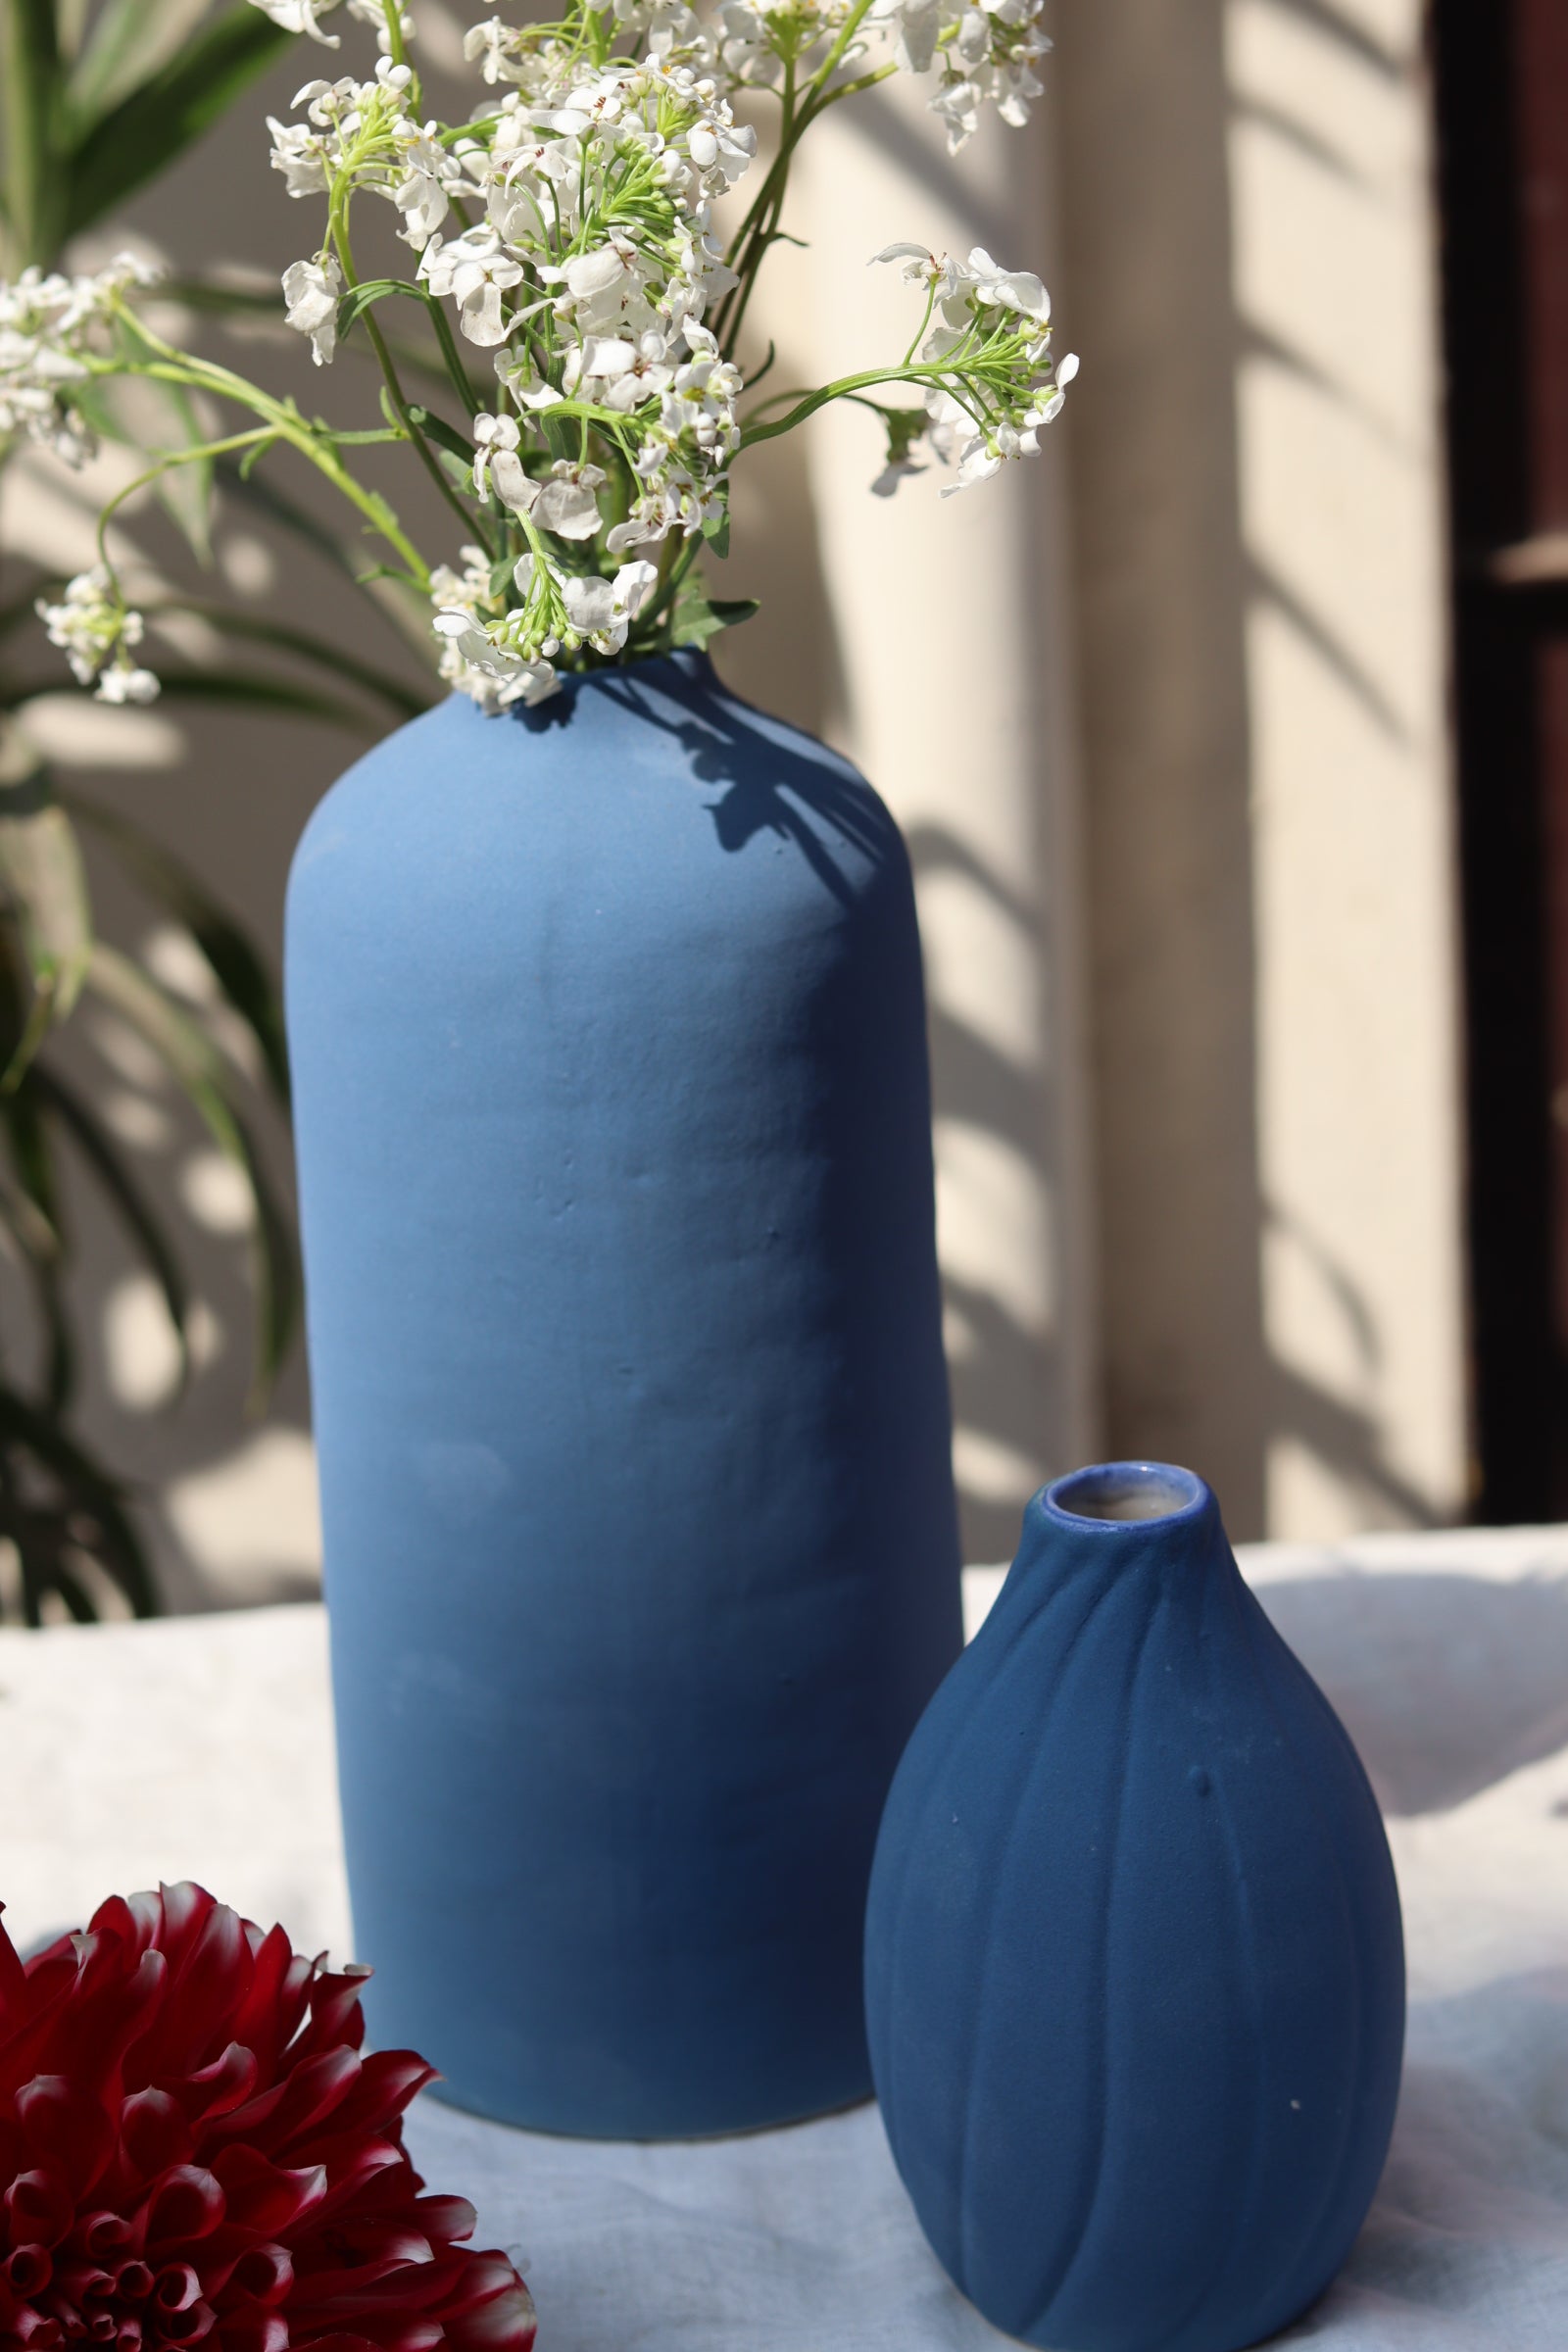 handmade blue vase tall & sanded handmade in india